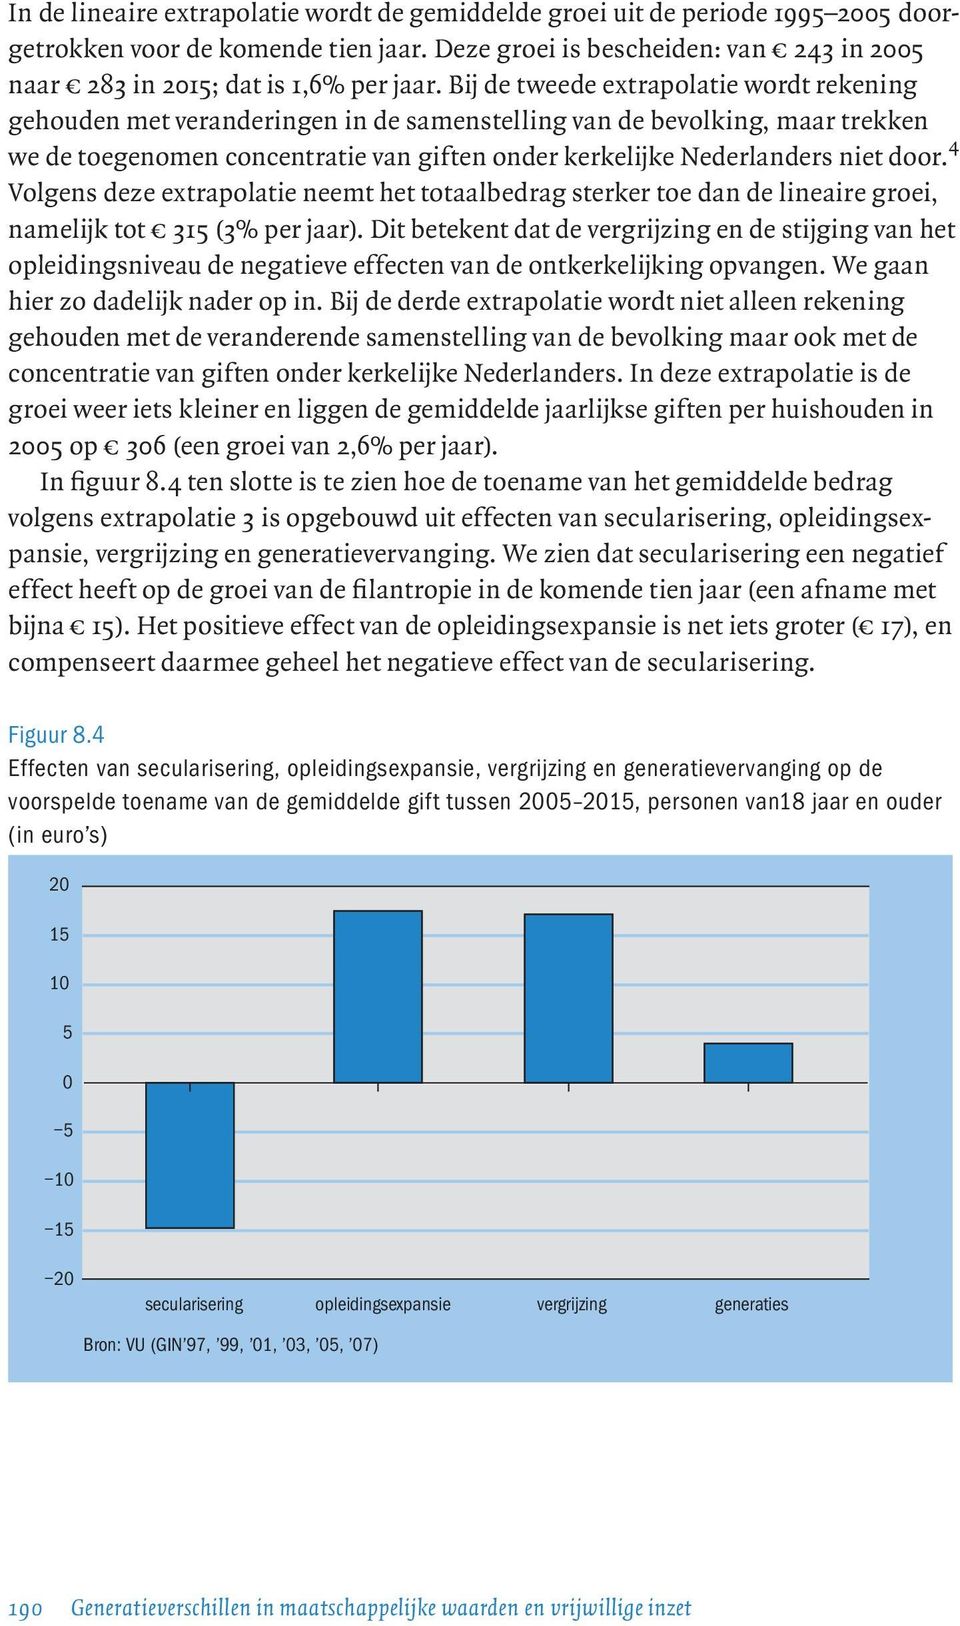 Bij de tweede extrapolatie wordt rekening gehouden met veranderingen in de samenstelling van de bevolking, maar trekken we de toegenomen concentratie van giften onder kerkelijke Nederlanders niet